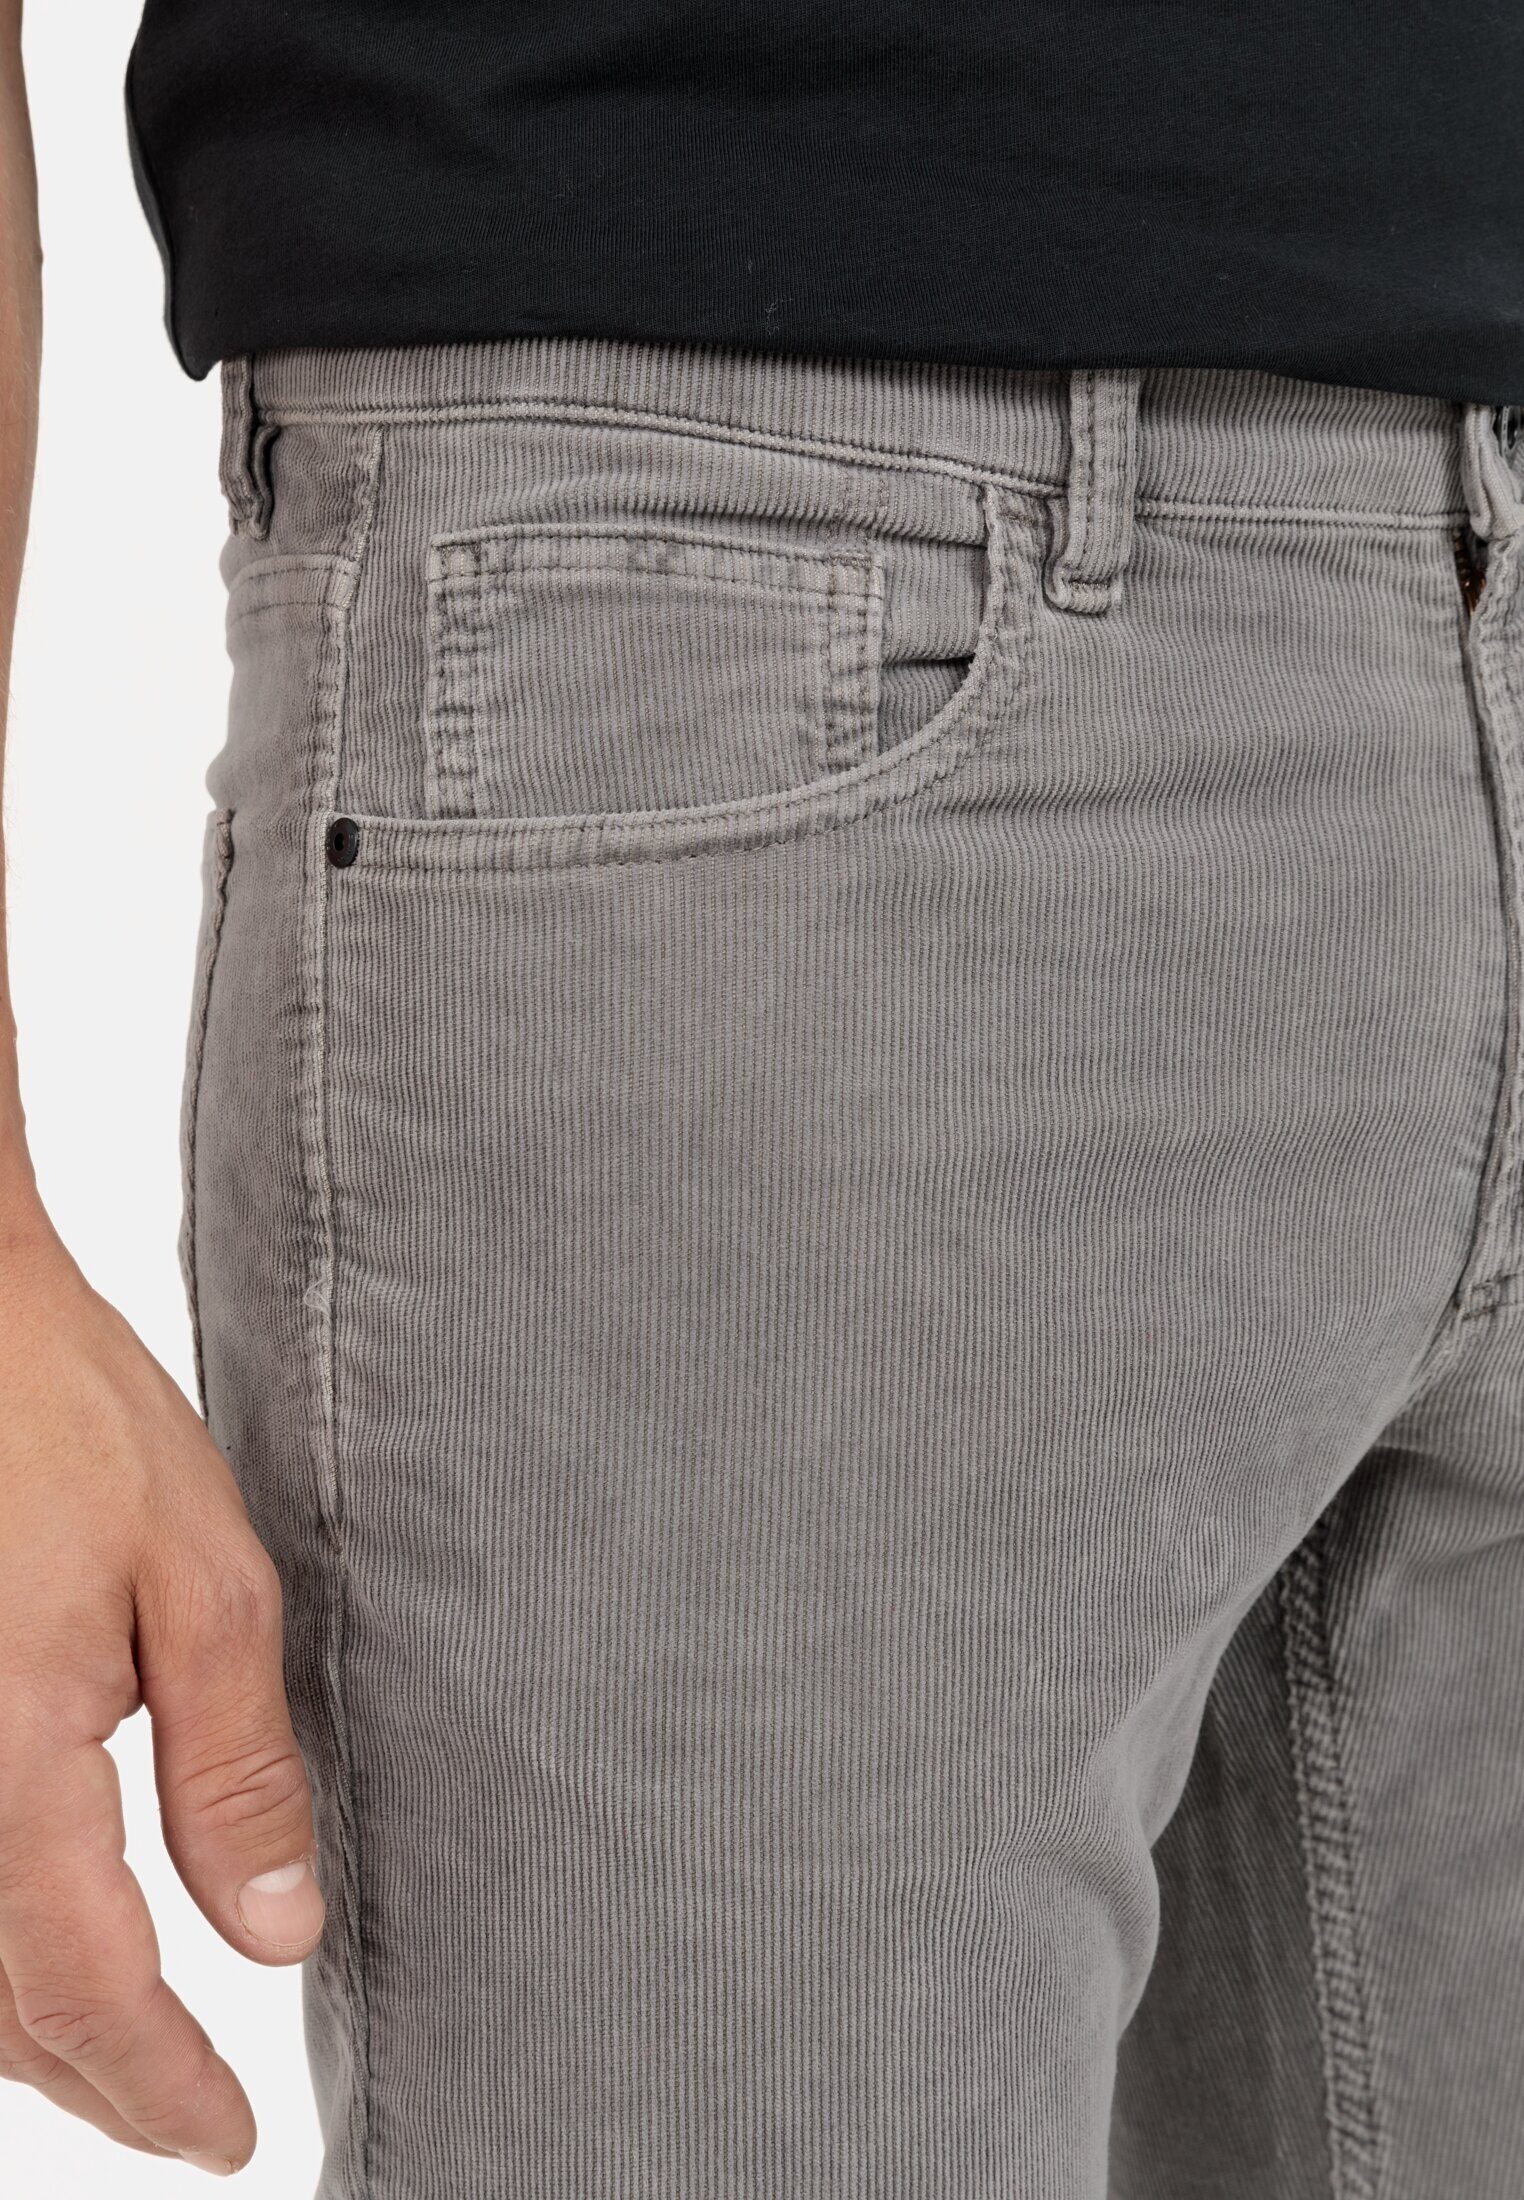 Fit Cordhose active camel Grau 5-Pocket-Jeans Regular 5-Pocket